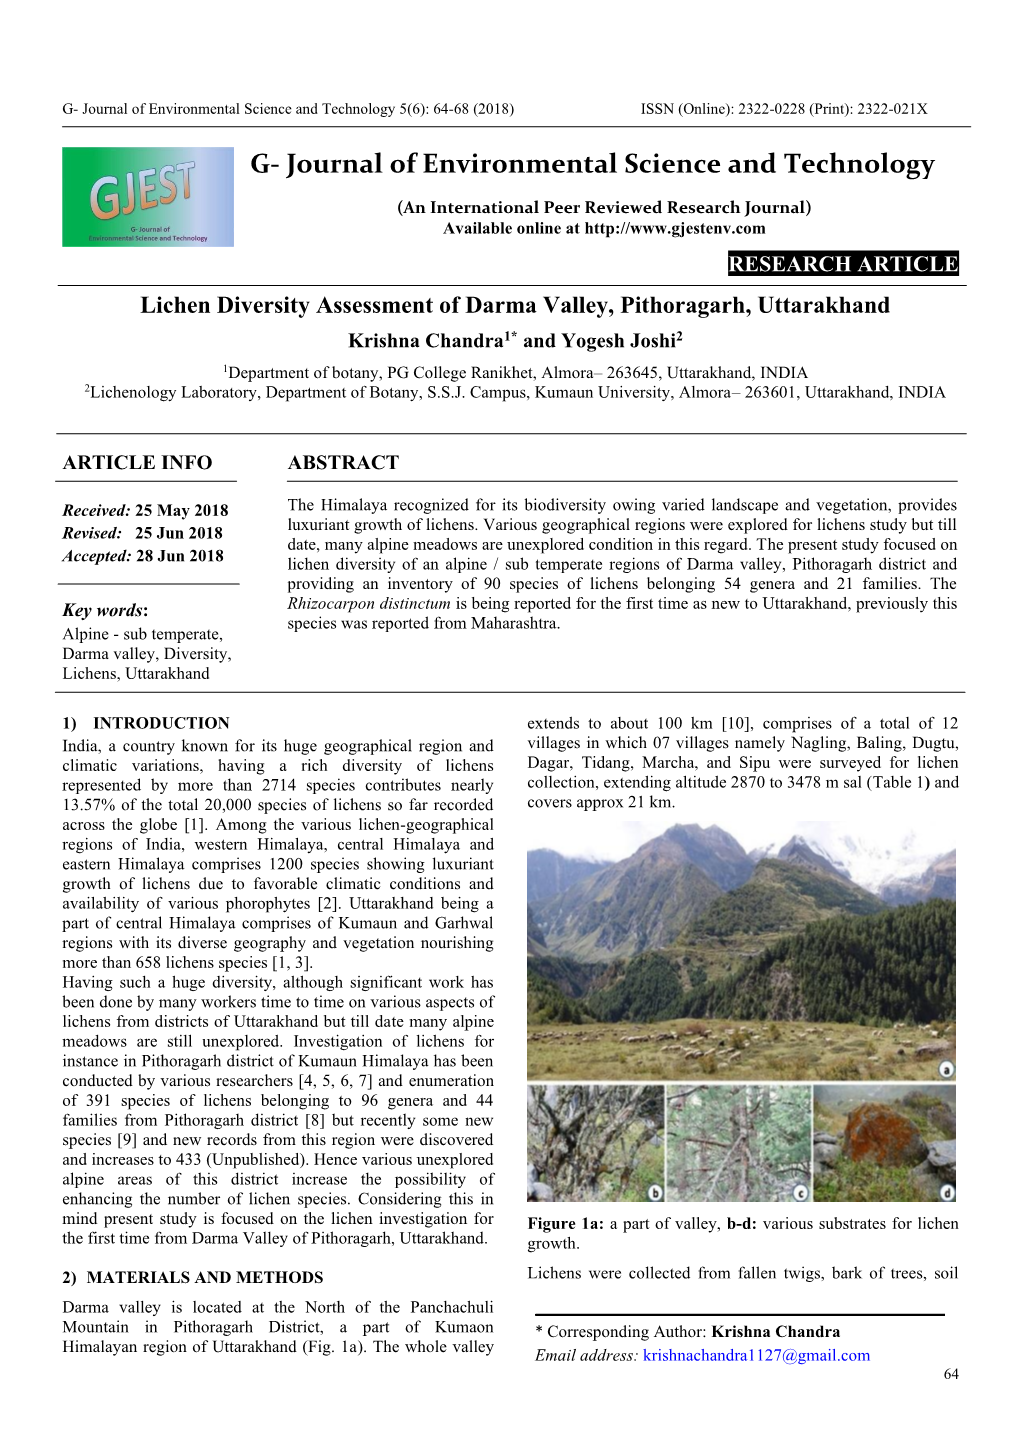 Lichen Diversity Assessment of Darma Valley, Pithoragarh, Uttarakhand